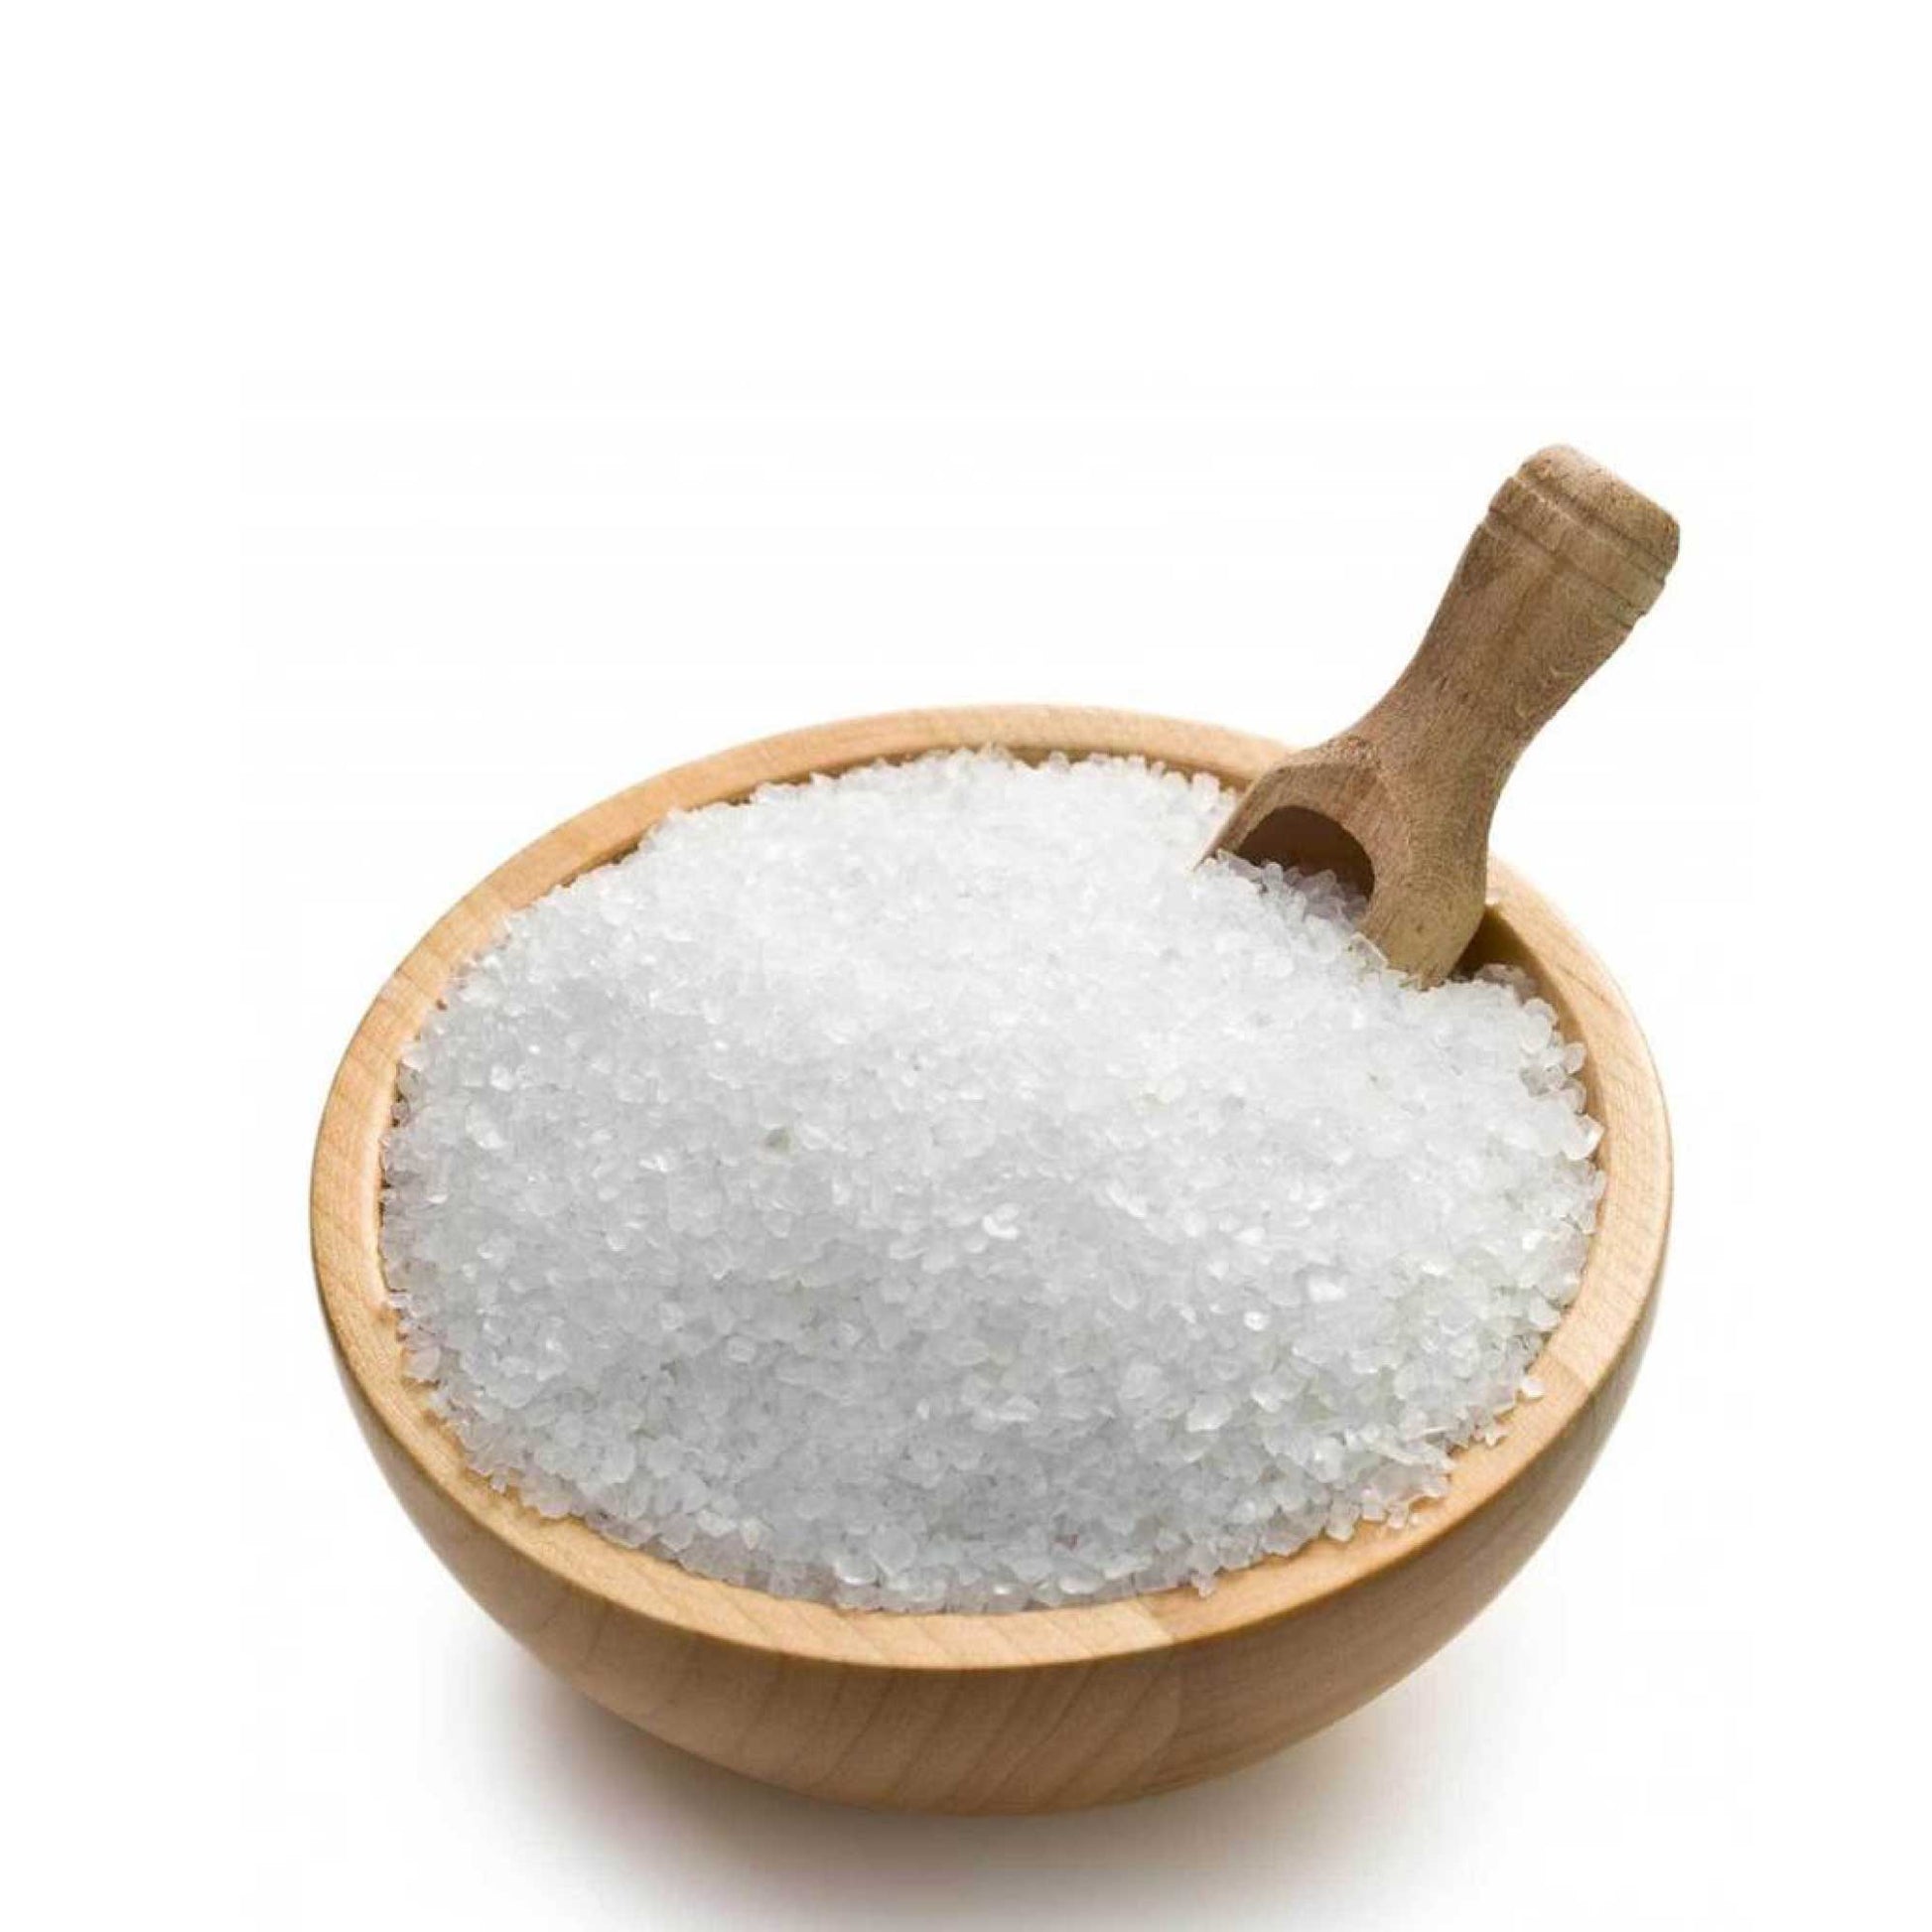 USP Epsom Salt Pharmaceutical Grade - Bucket Pure Magnesium Sulfate Bath Salts